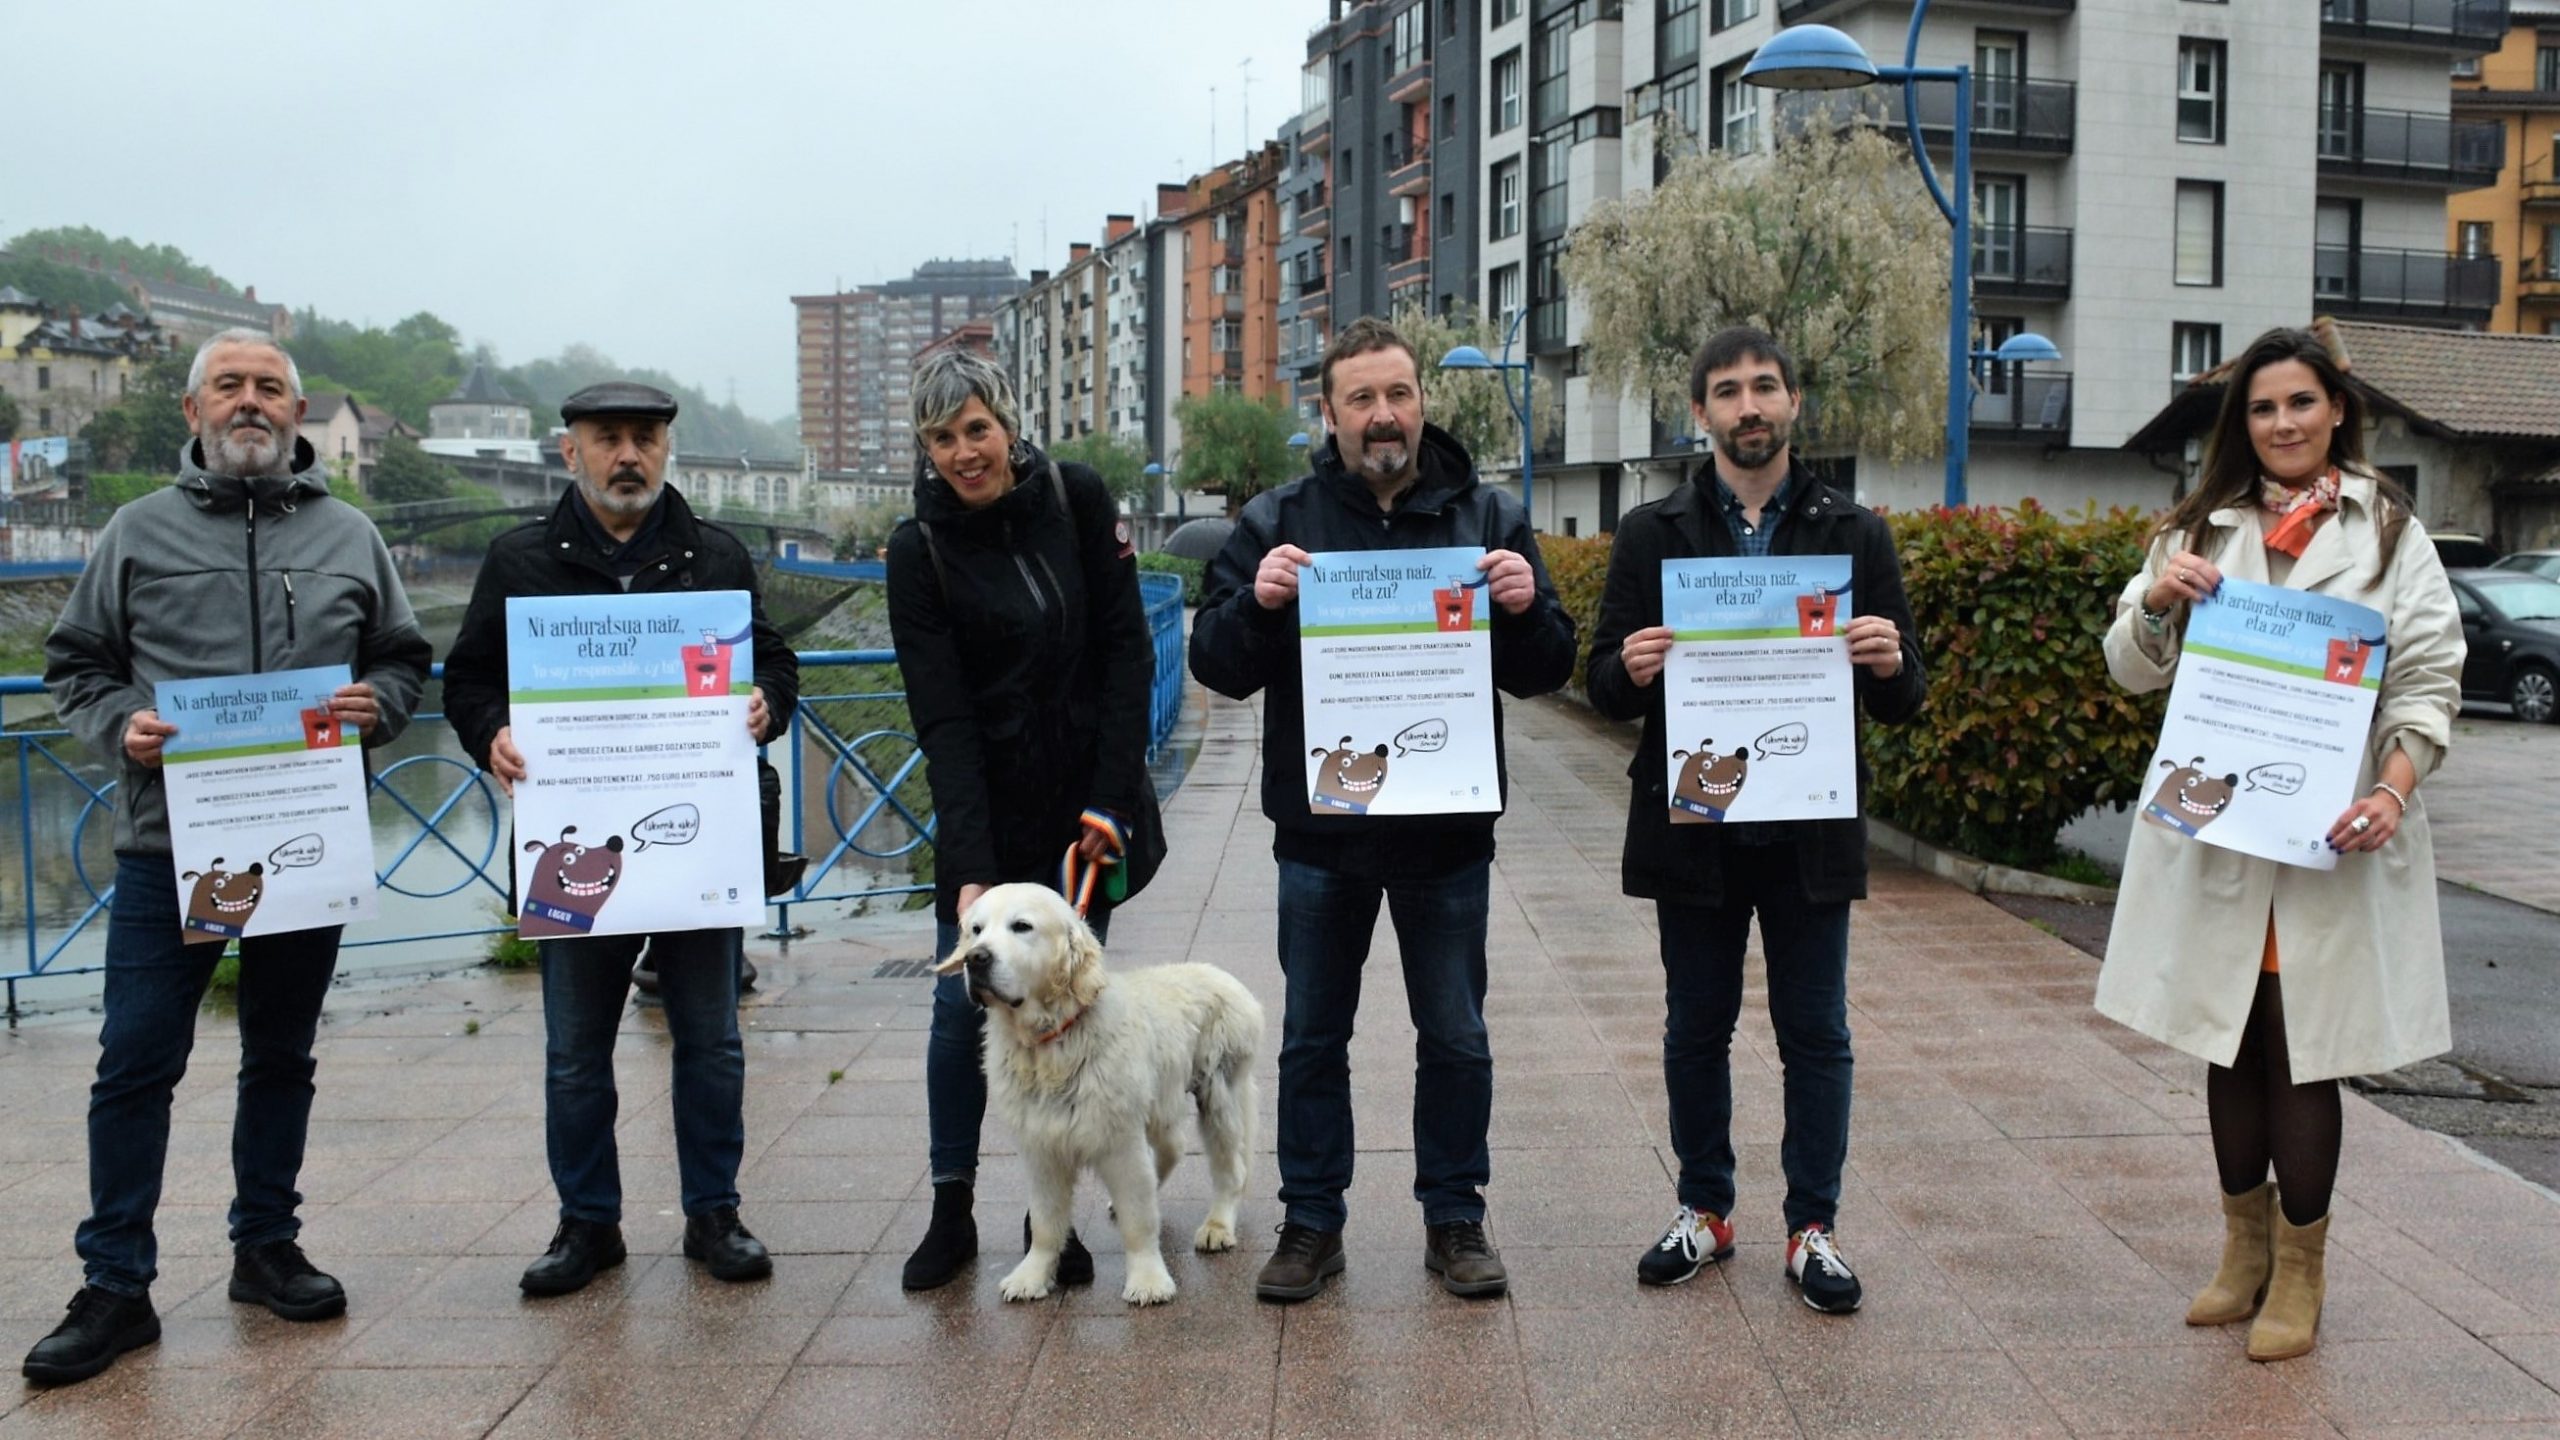 El Ayuntamiento de Errenteria ha puesto en marcha una campaña bajo el lema ‘Yo soy responsable, ¿y tú?’  buscando la corresponsabilidad de las personas responsables de perros